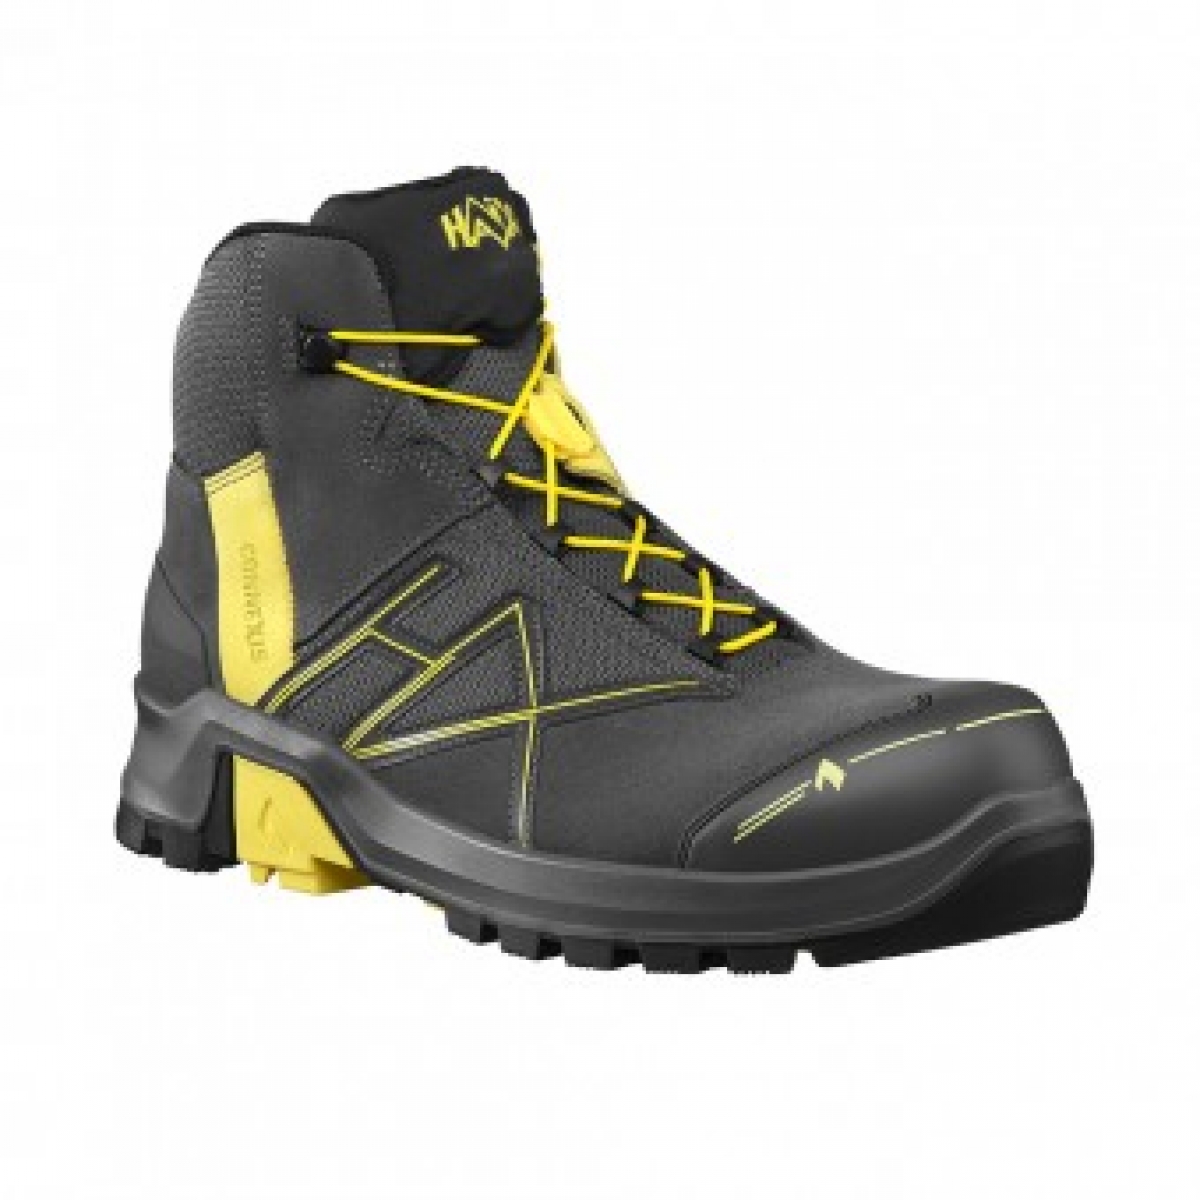 HAIX-Footwear, 630007-S3 Sicherheitsschuhe, hoch, CONNEXIS Safety GTX S3, MID GREY/CITRUS, grau/grn